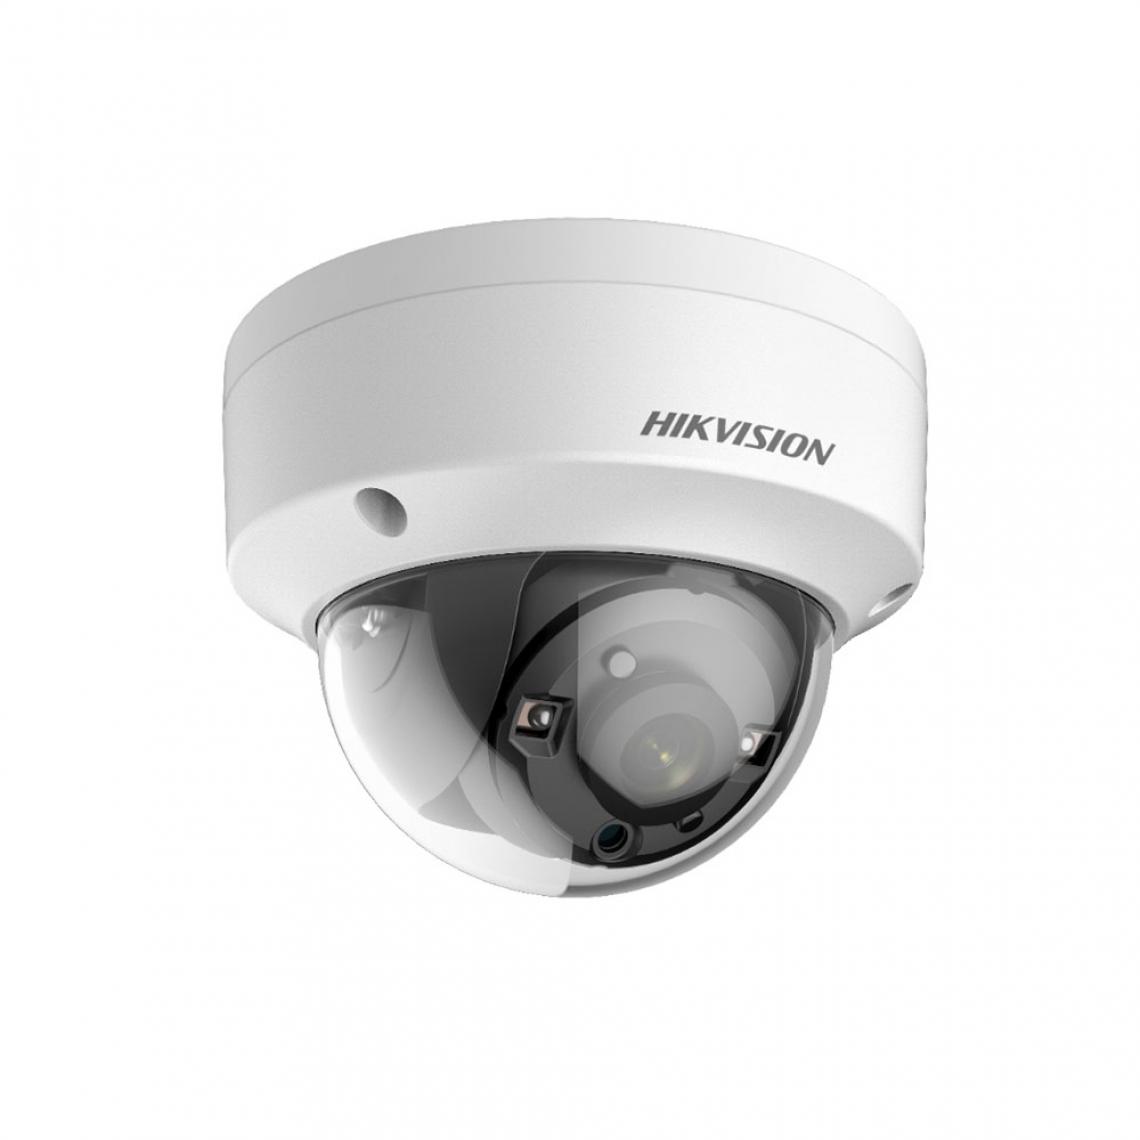 Hikvision - DS-2CE56D8T-VPITE(2,8mm) - Caméra de surveillance connectée